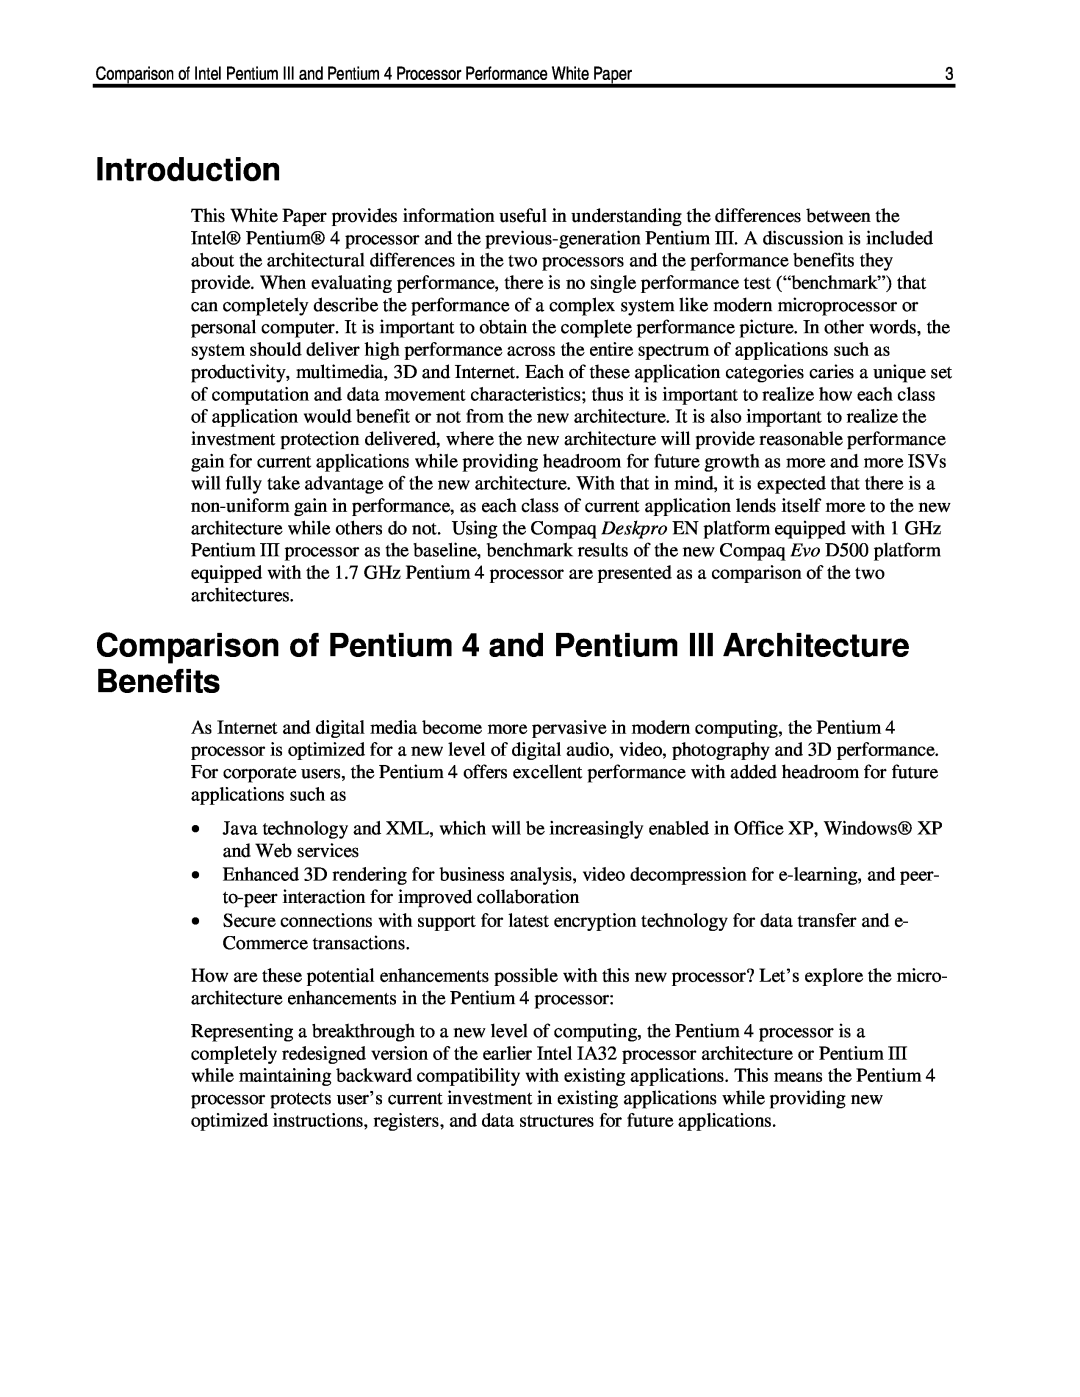 HP EN P667/820, EN P600, EN P550, EN P650 Introduction, Comparison of Pentium 4 and Pentium III Architecture Benefits 